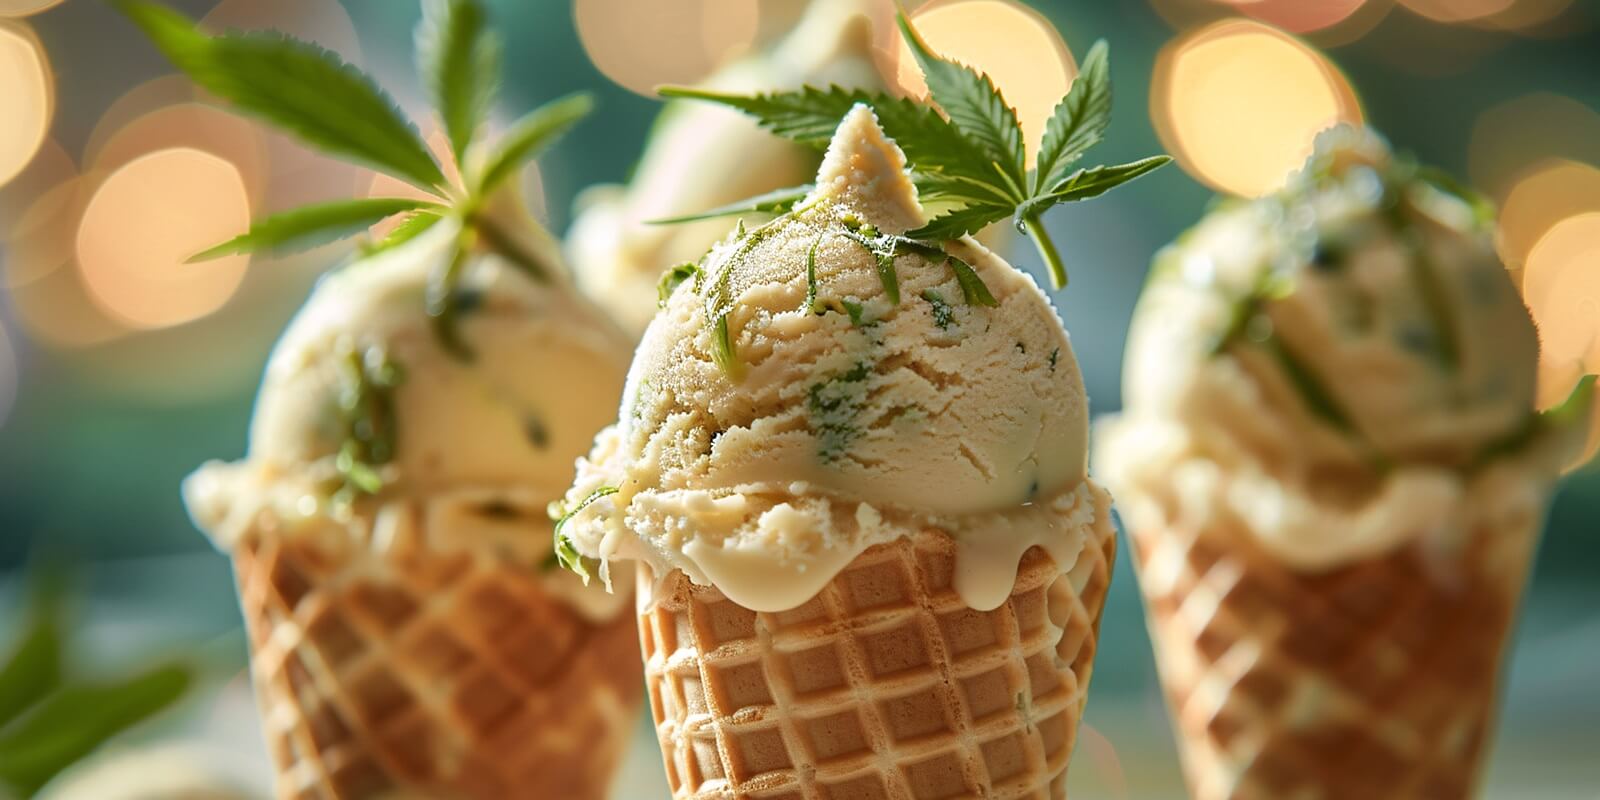 cannabis ice cream cones